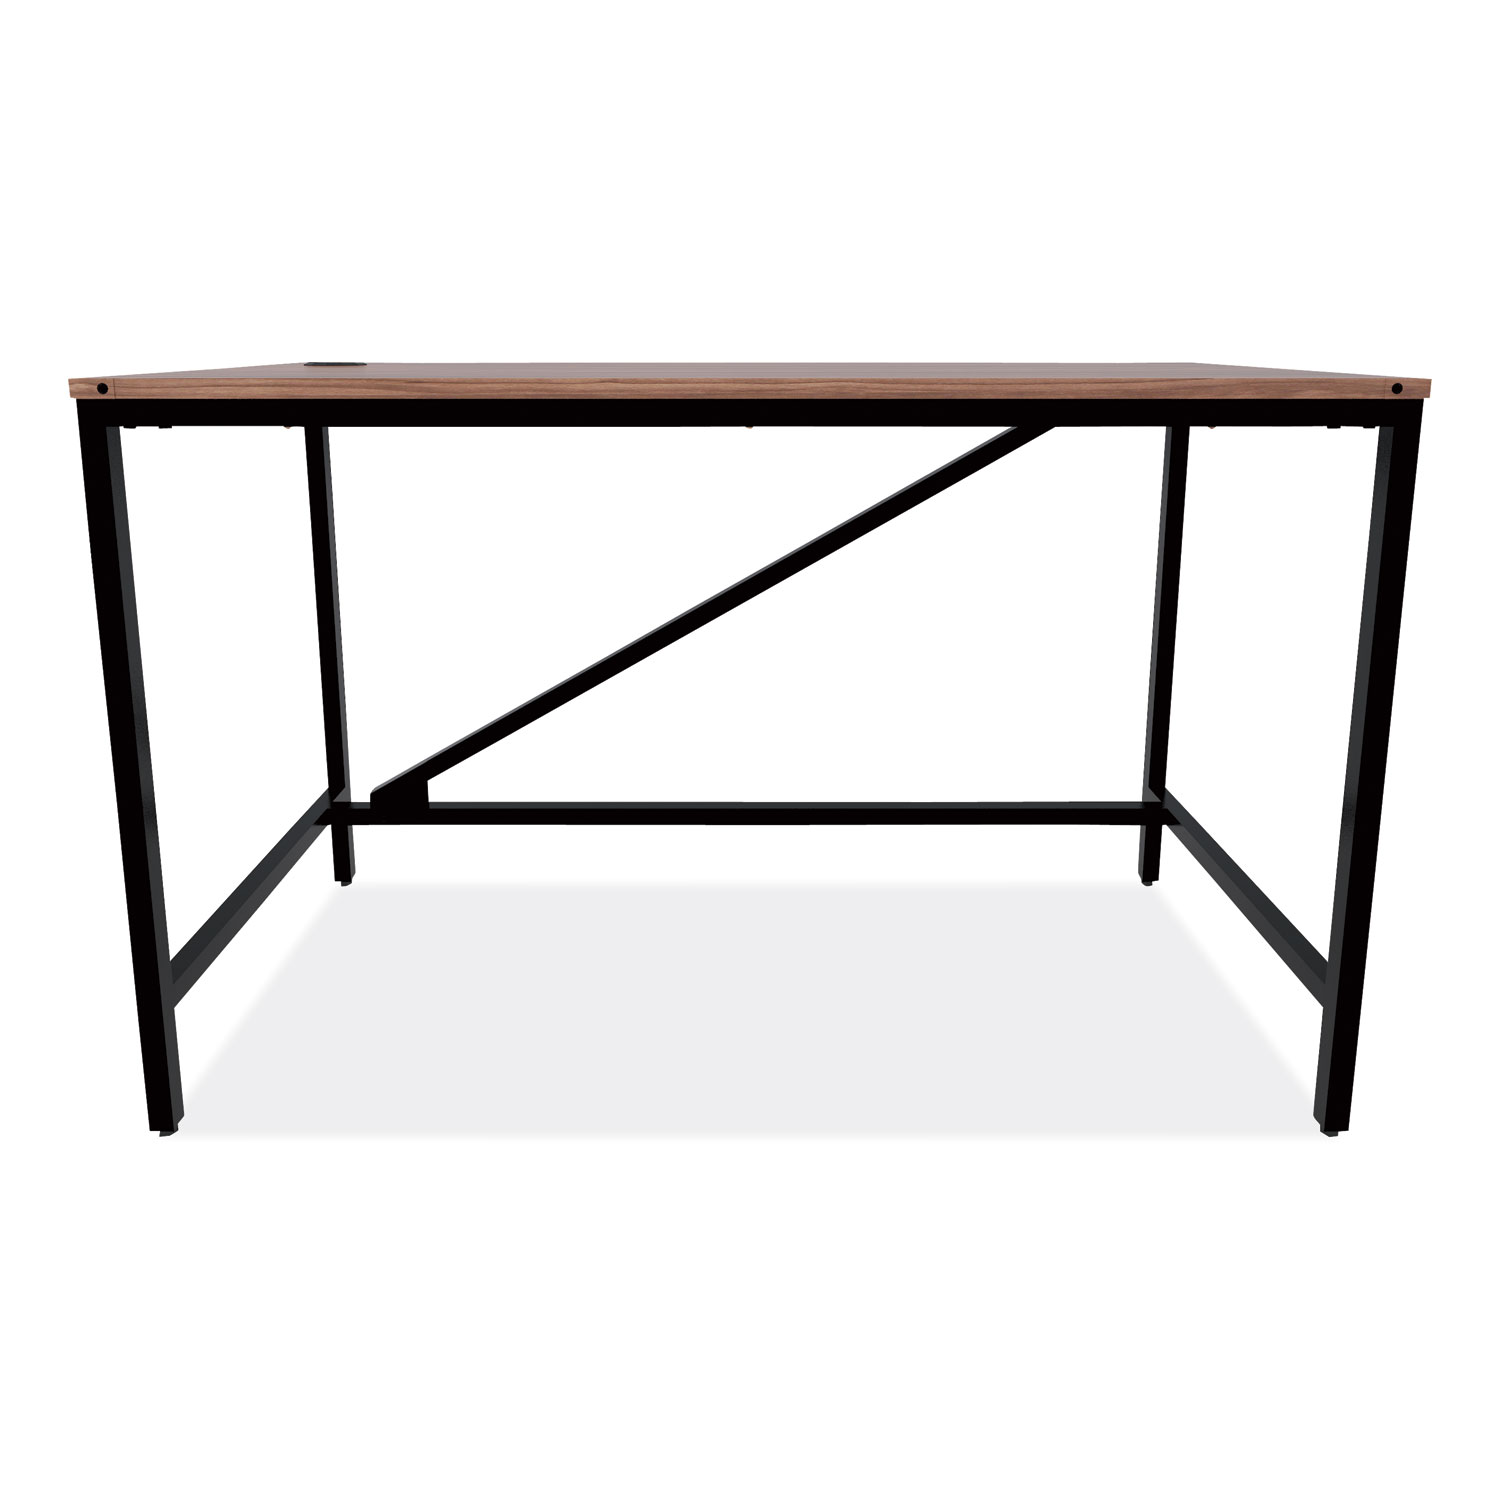  Alera ID-4824B Industrial Series Table Desk, 47.25w x 23.63d x 29.5h, Modern Walnut (ALELTD4824WA) 